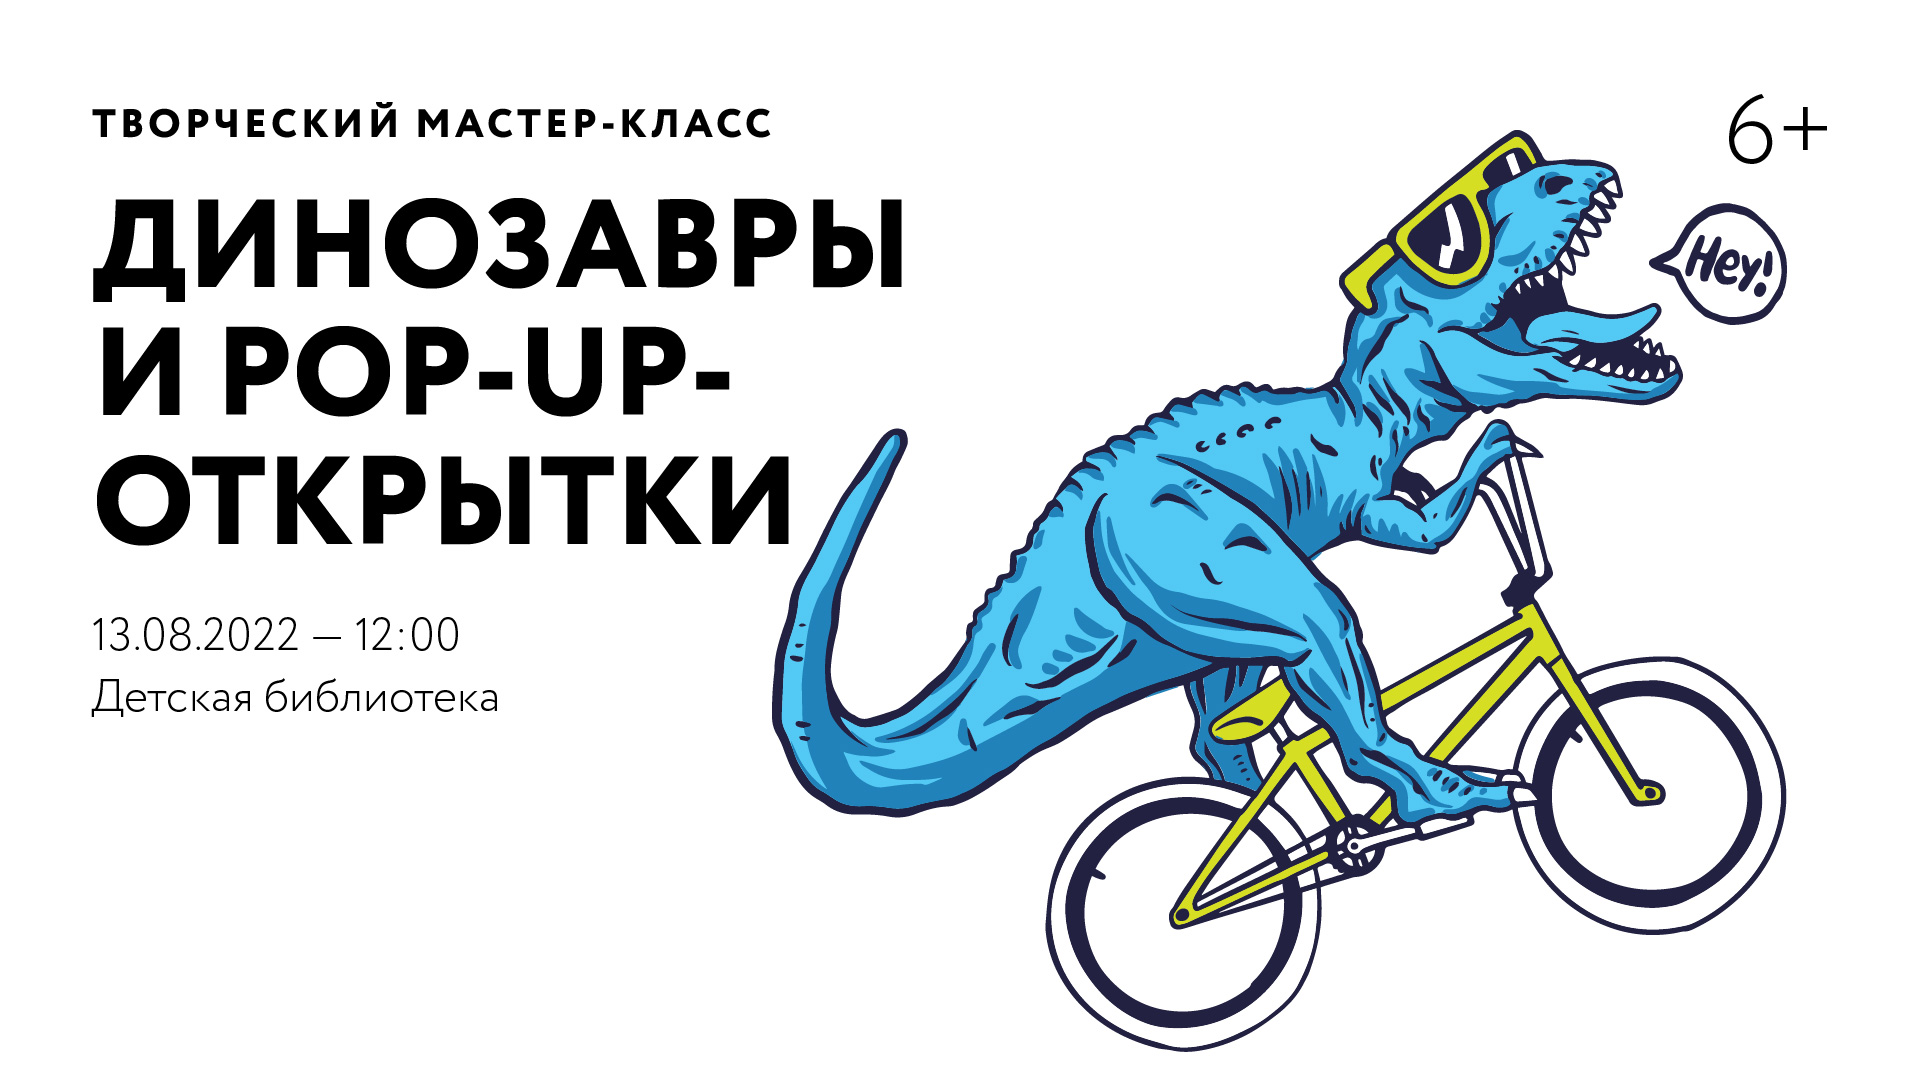 ОТМЕНА | Творческий мастер-класс «Динозавры и Pop-Up-открытки»